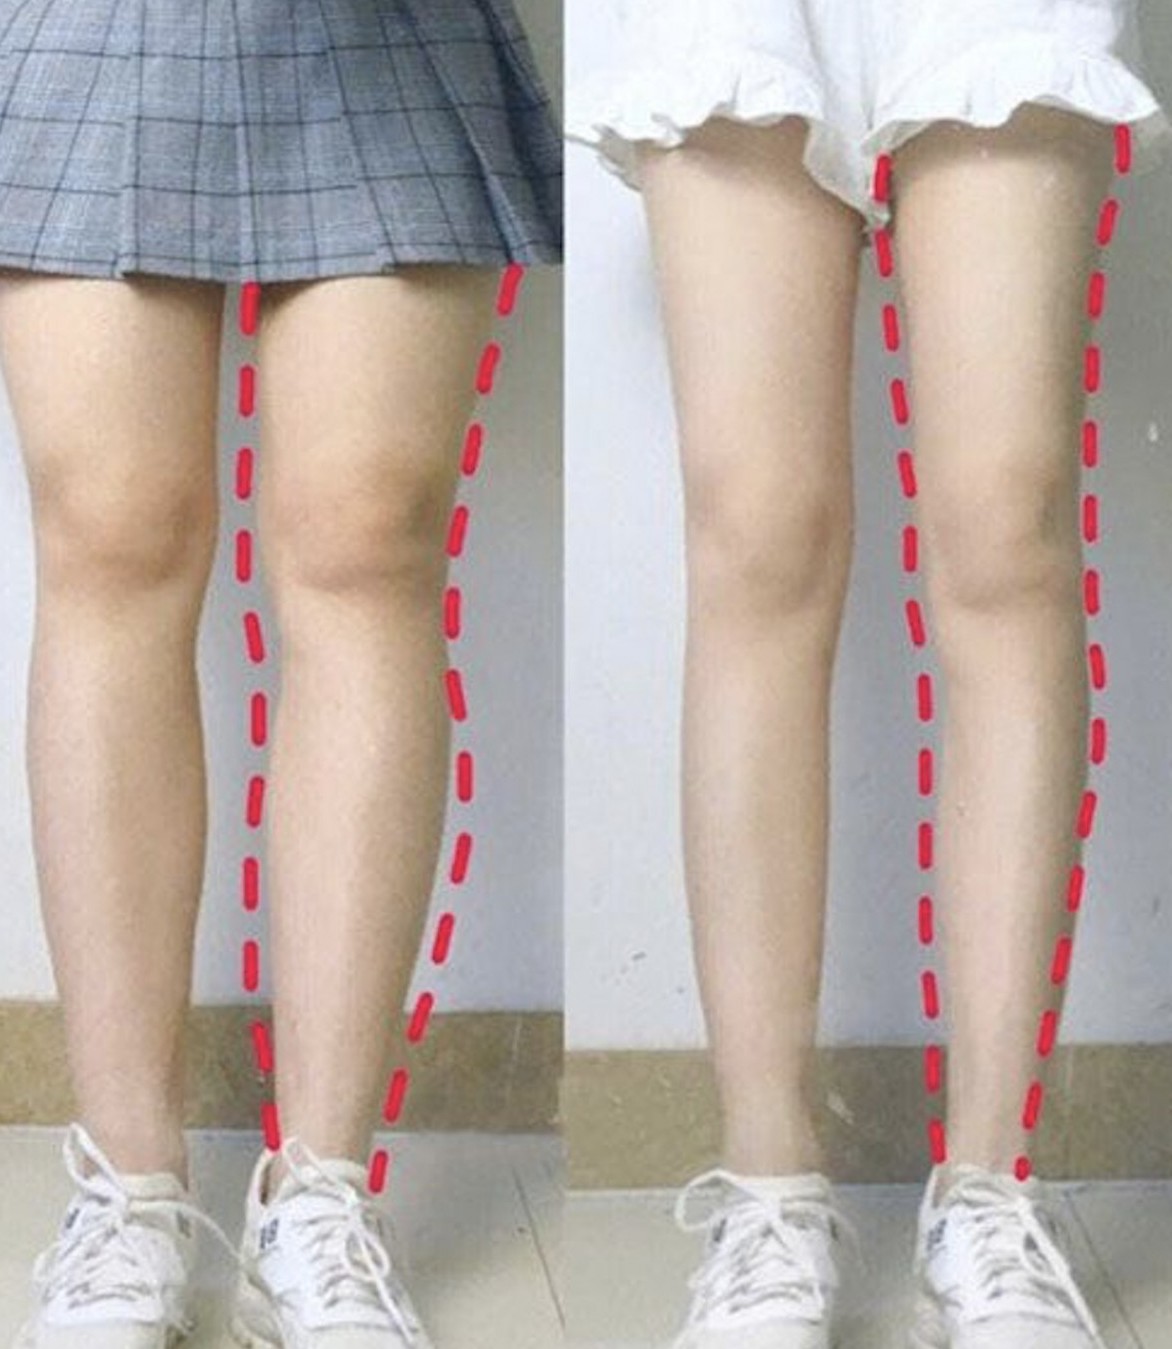 減大腿, 減大腿內側, 瘦大腿, 瘦腿, 減大腿外側, 減大腿動作, 減大腿操